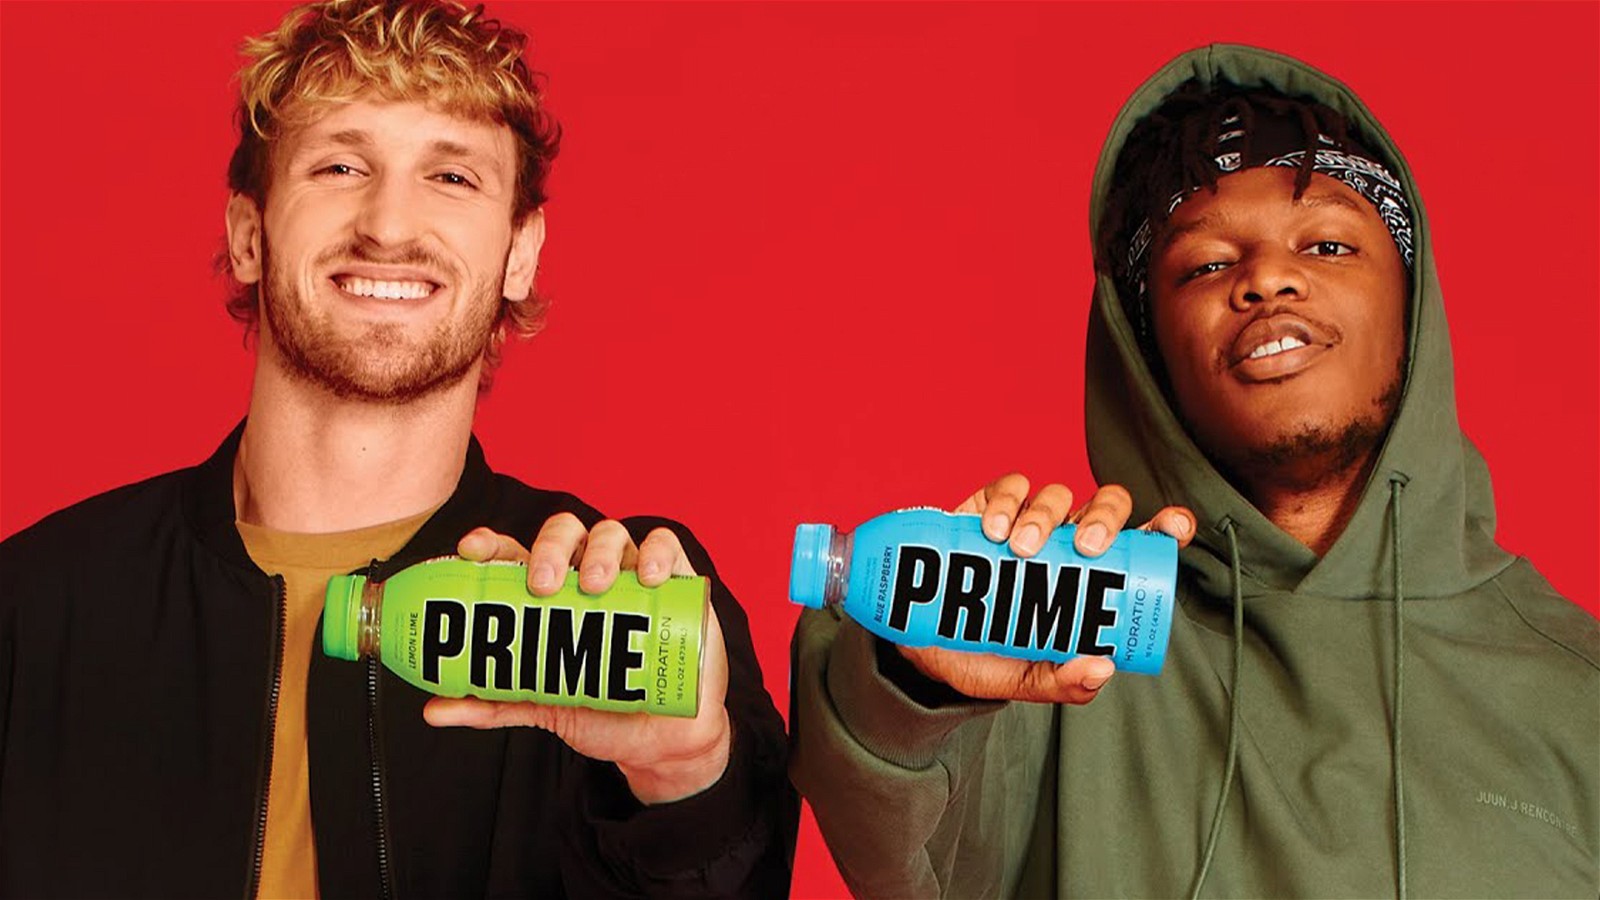 Logan Paul and KSI promoting Prime